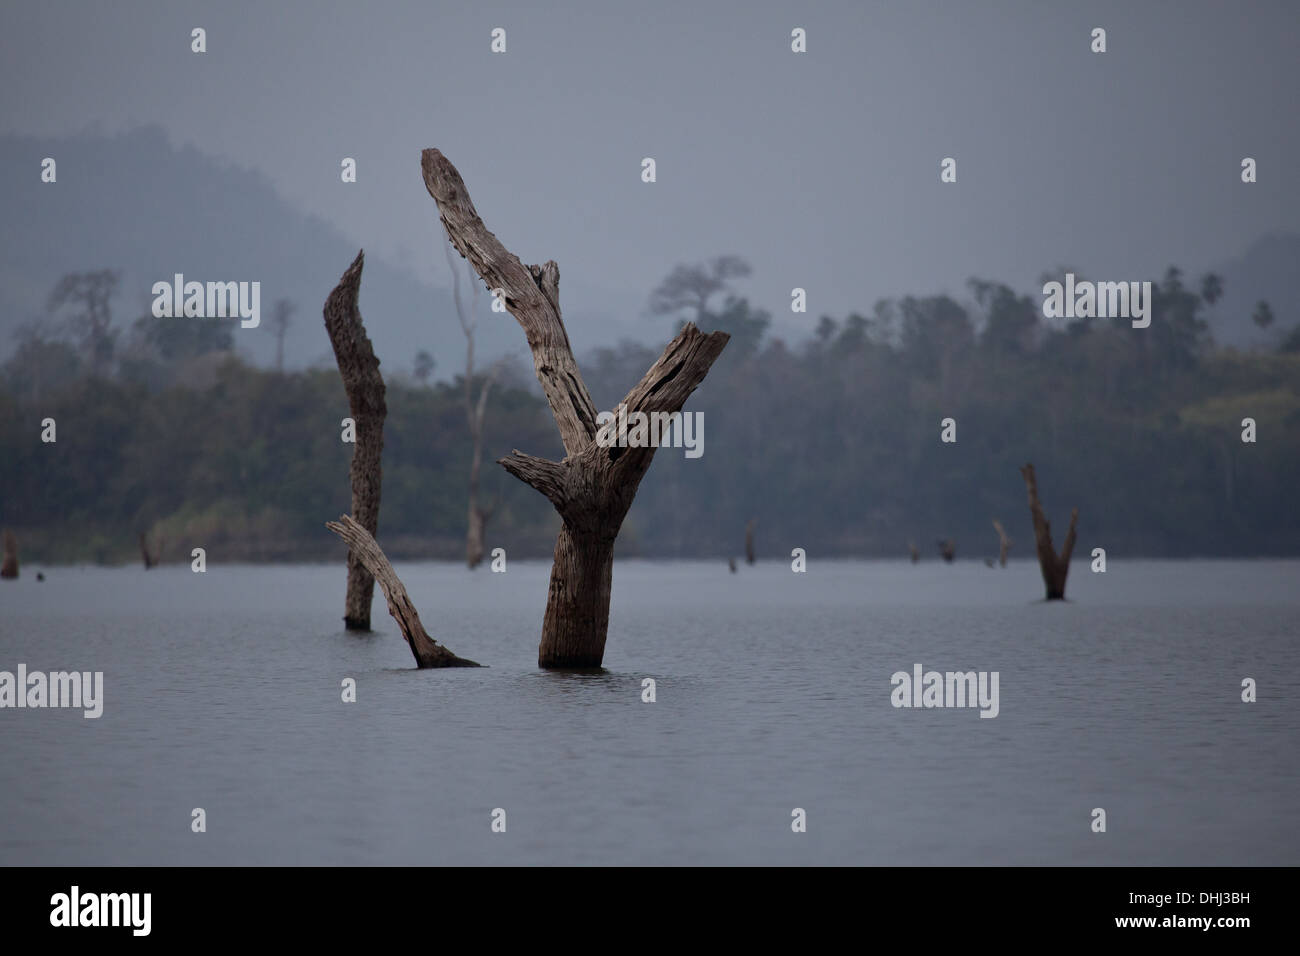 Baumstämme im Lago Bayano, einem künstlichen See, Panama Provinz, Republik Panama. Stockfoto